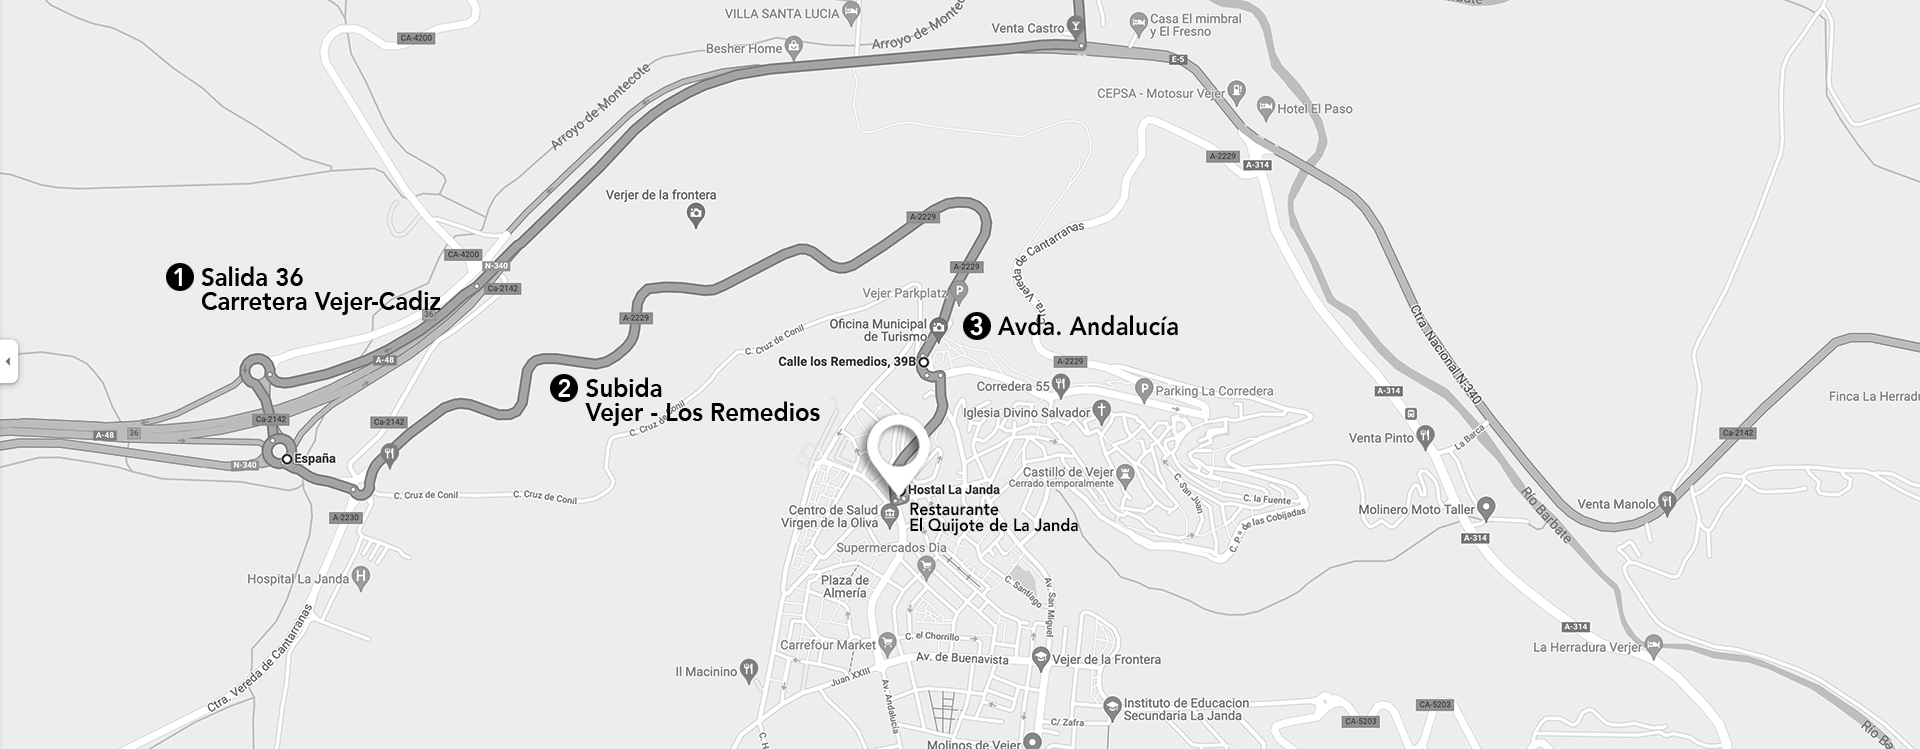 How to get to Hostal La Janda in Vejer de La Frontera